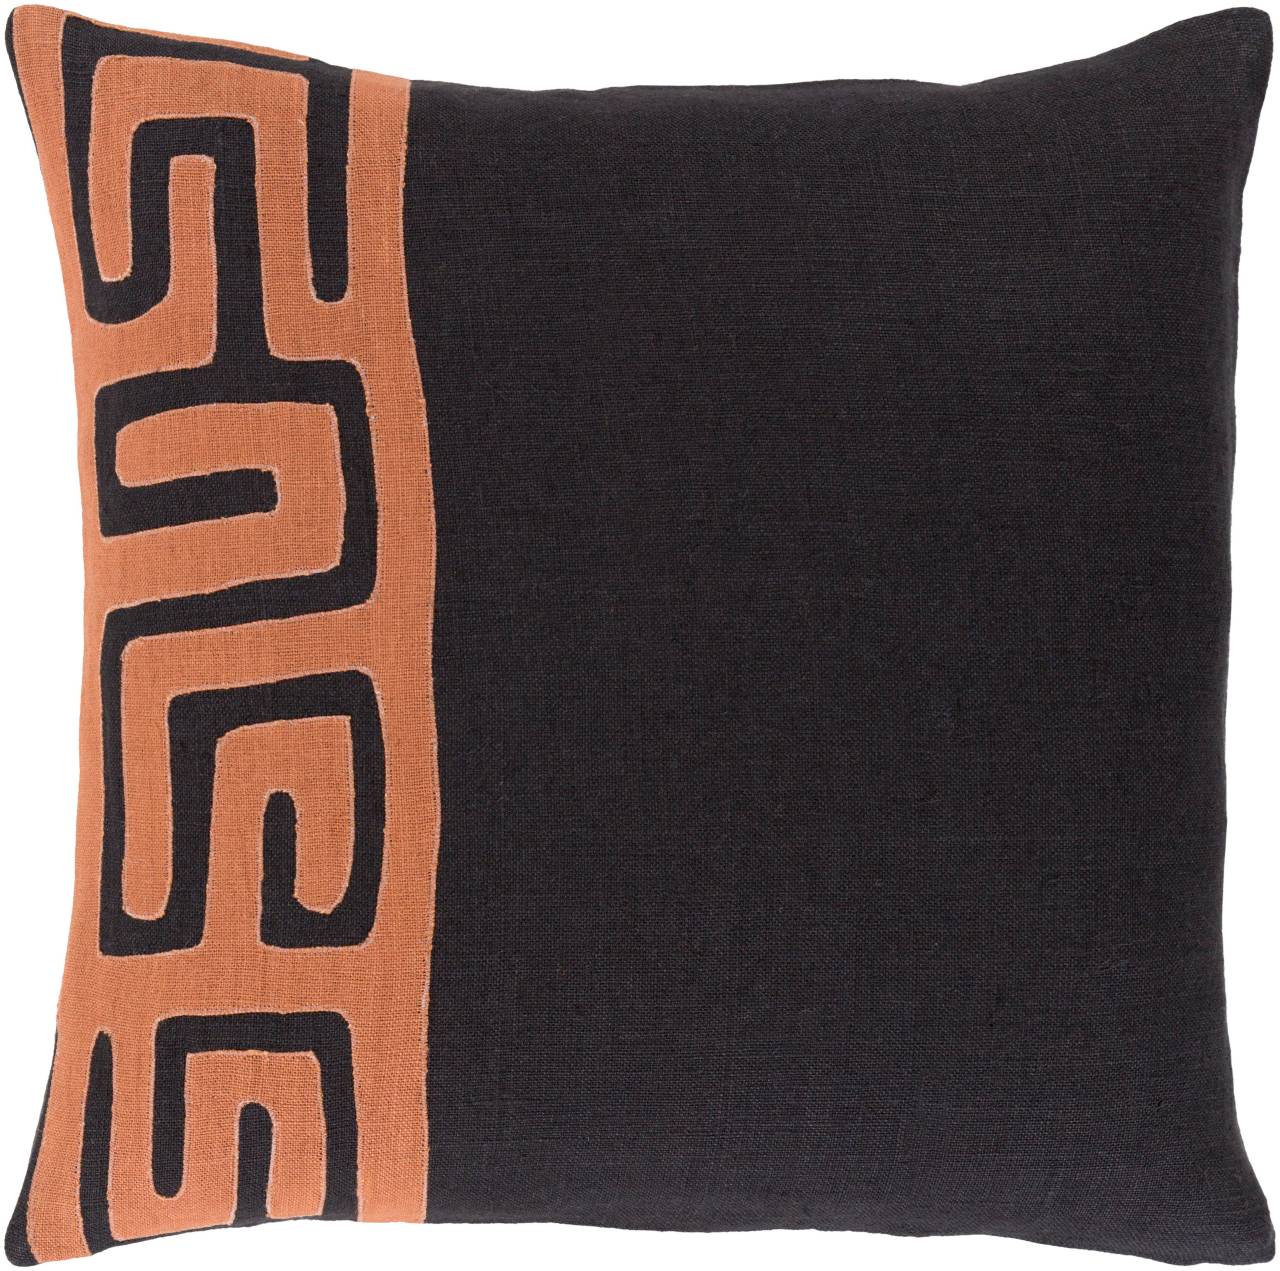 Helhoek Burnt Orange Pillow Cover